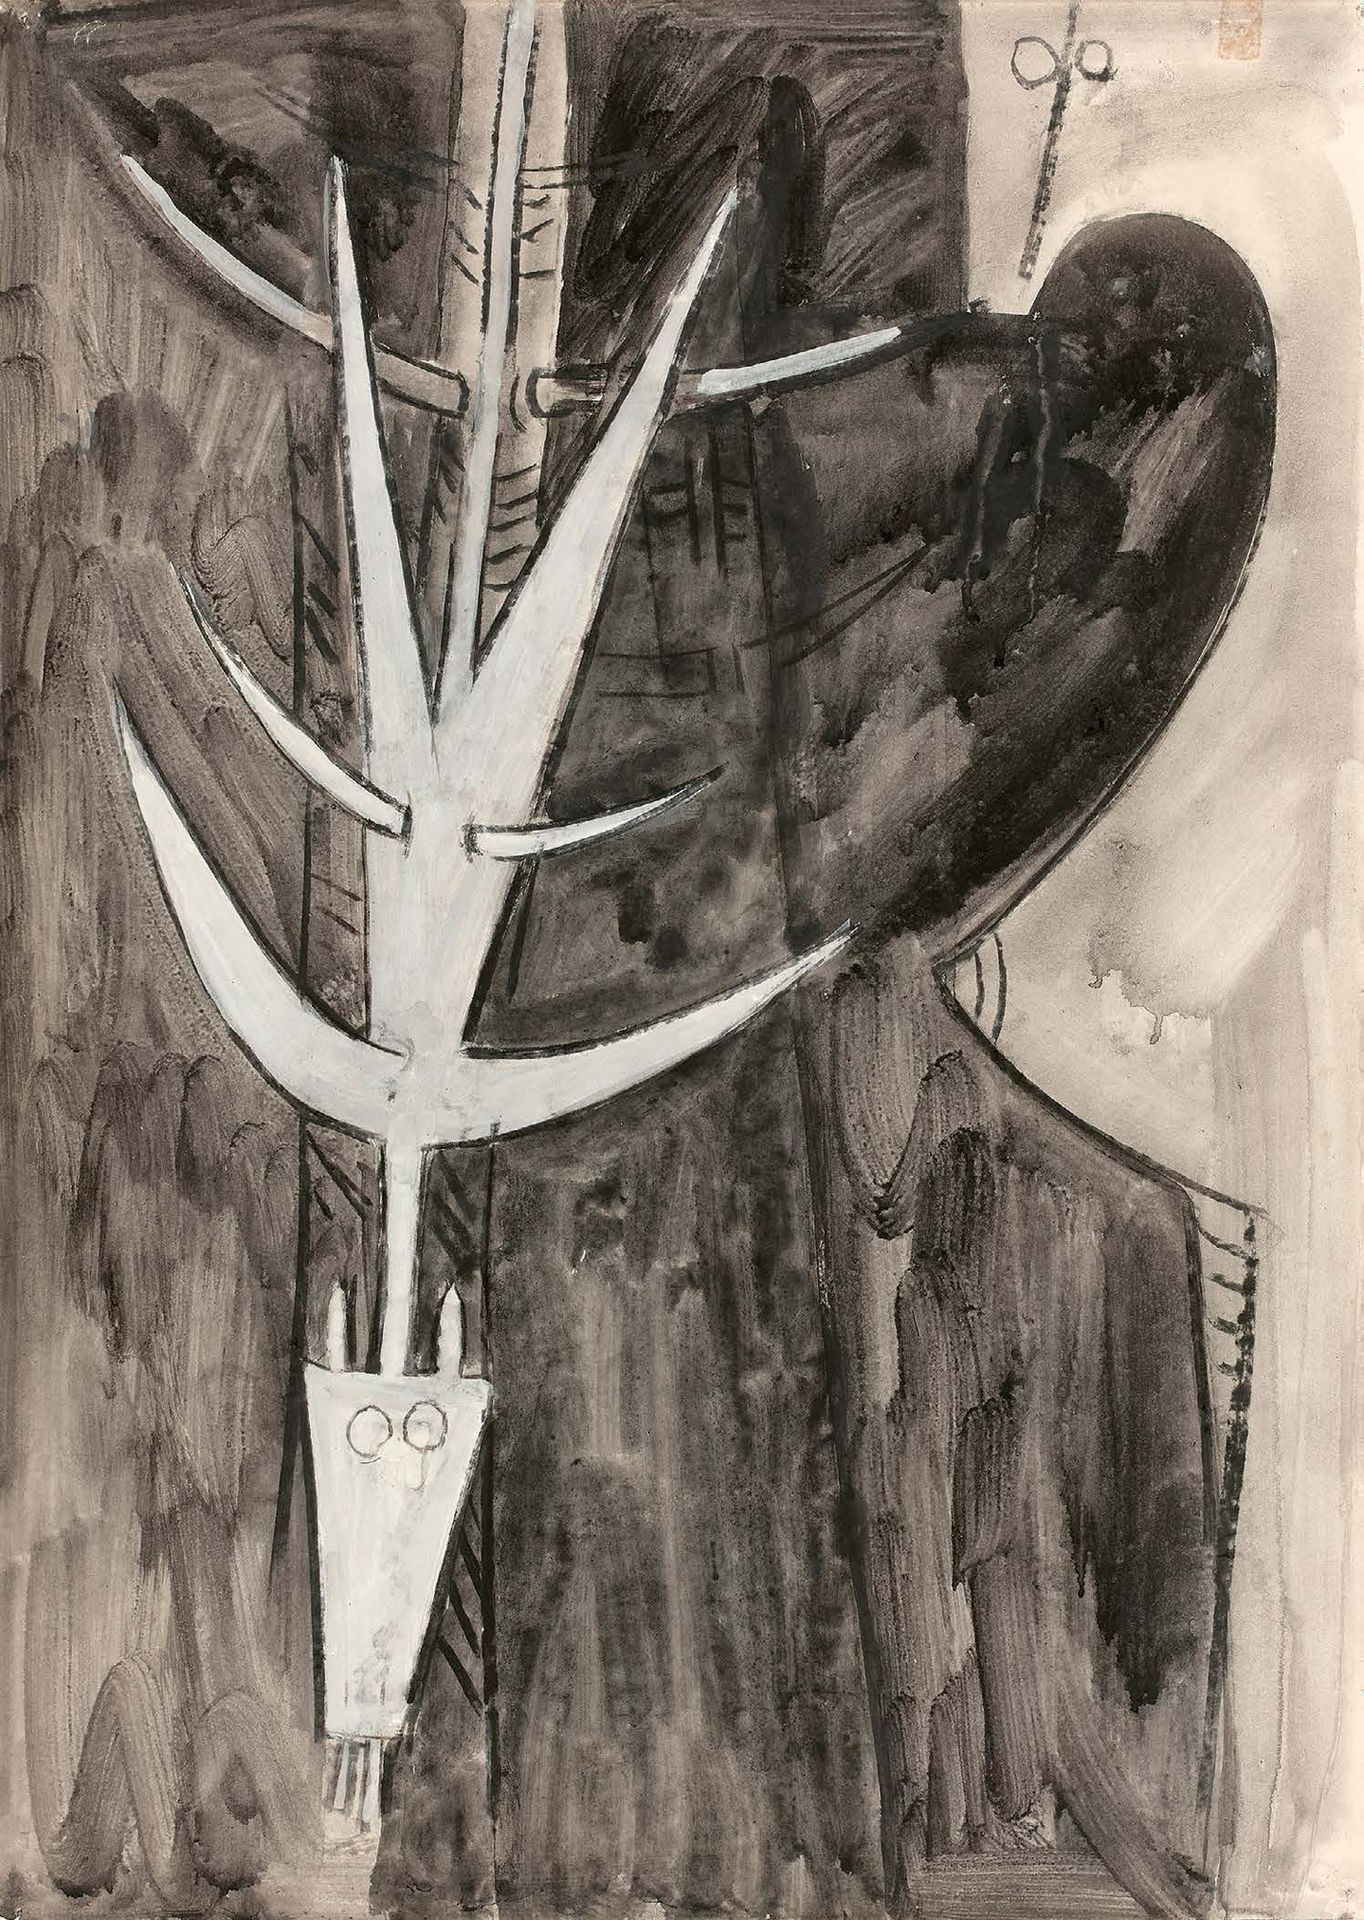 Wifredo LAM (1902-1982) 无题，1961年
纸上水墨画，背面有签名和日期。
70 x 50 cm
此作品在档案馆
Wifredo Lam。&hellip;